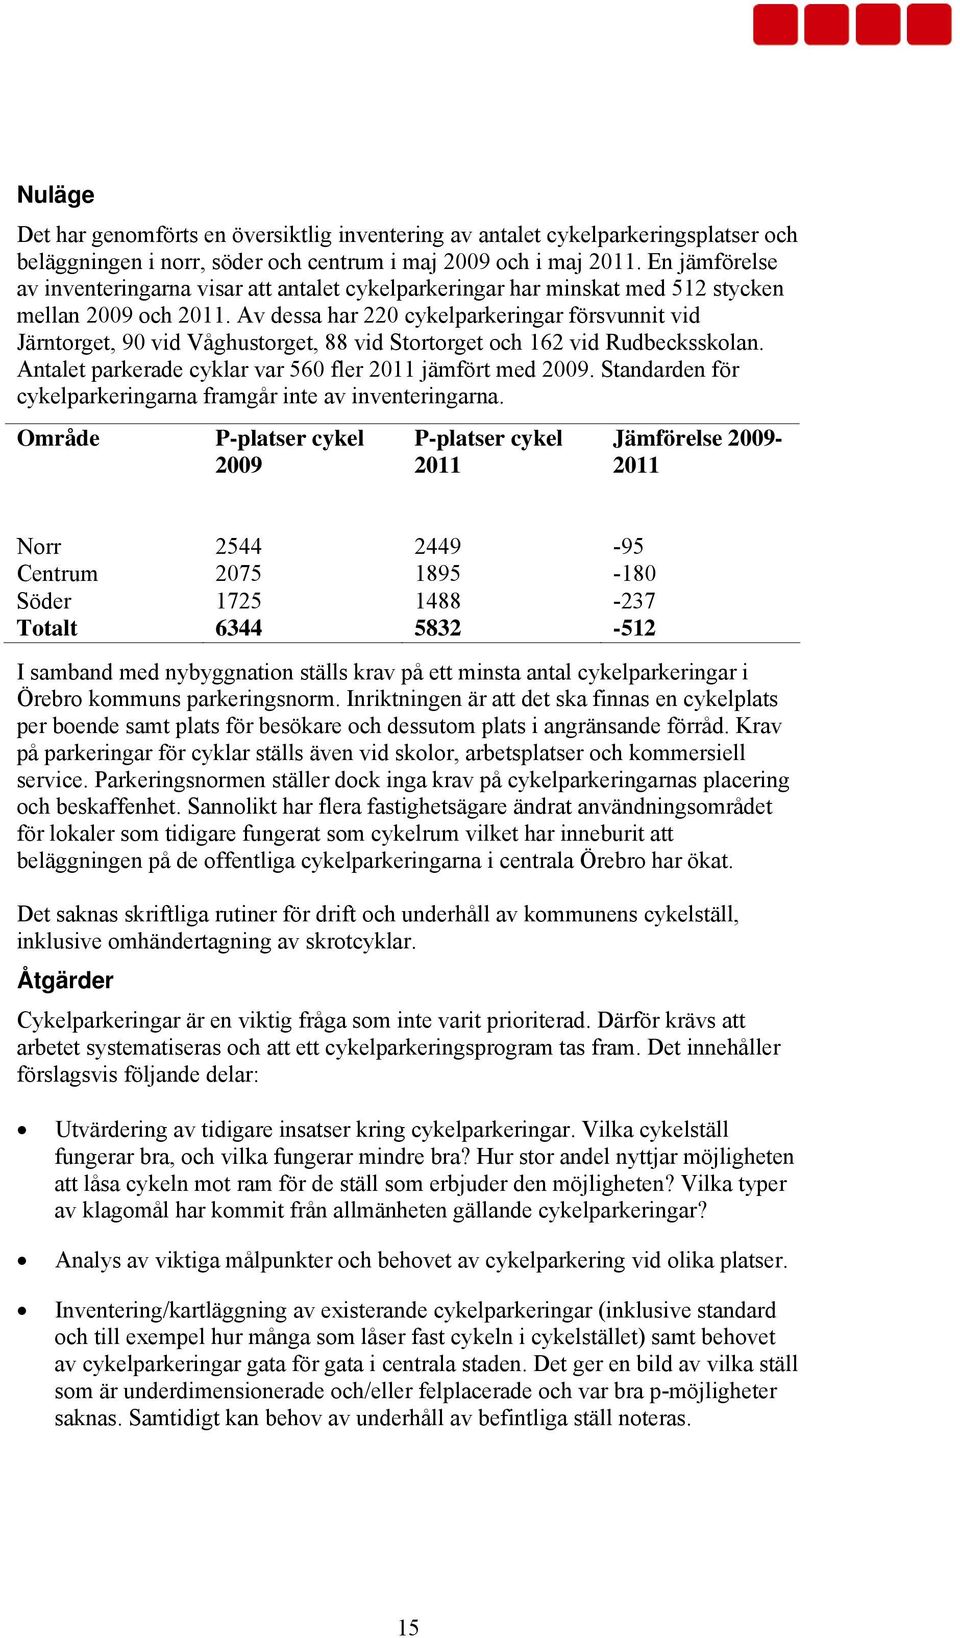 Av dessa har 220 cykelparkeringar försvunnit vid Järntorget, 90 vid Våghustorget, 88 vid Stortorget och 162 vid Rudbecksskolan. Antalet parkerade cyklar var 560 fler 2011 jämfört med 2009.